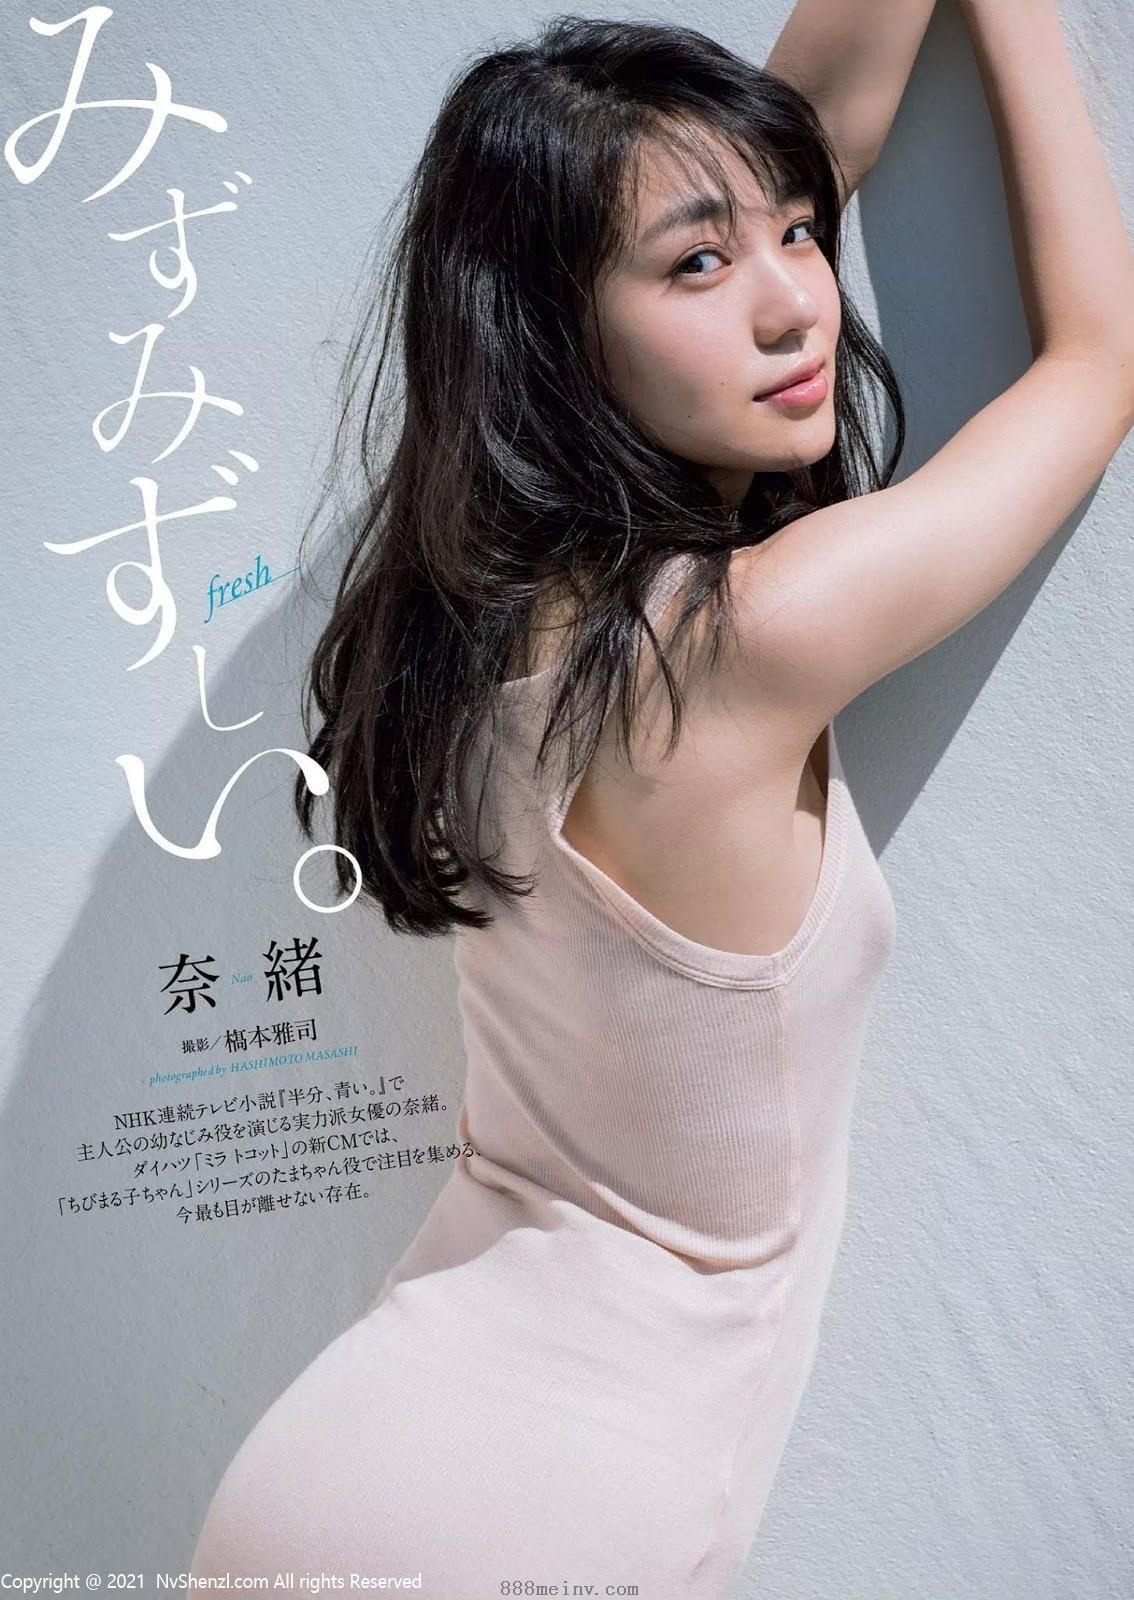 奈緒- Weekly Playboy / 2018.09.10 『みずみずしい。』私房照